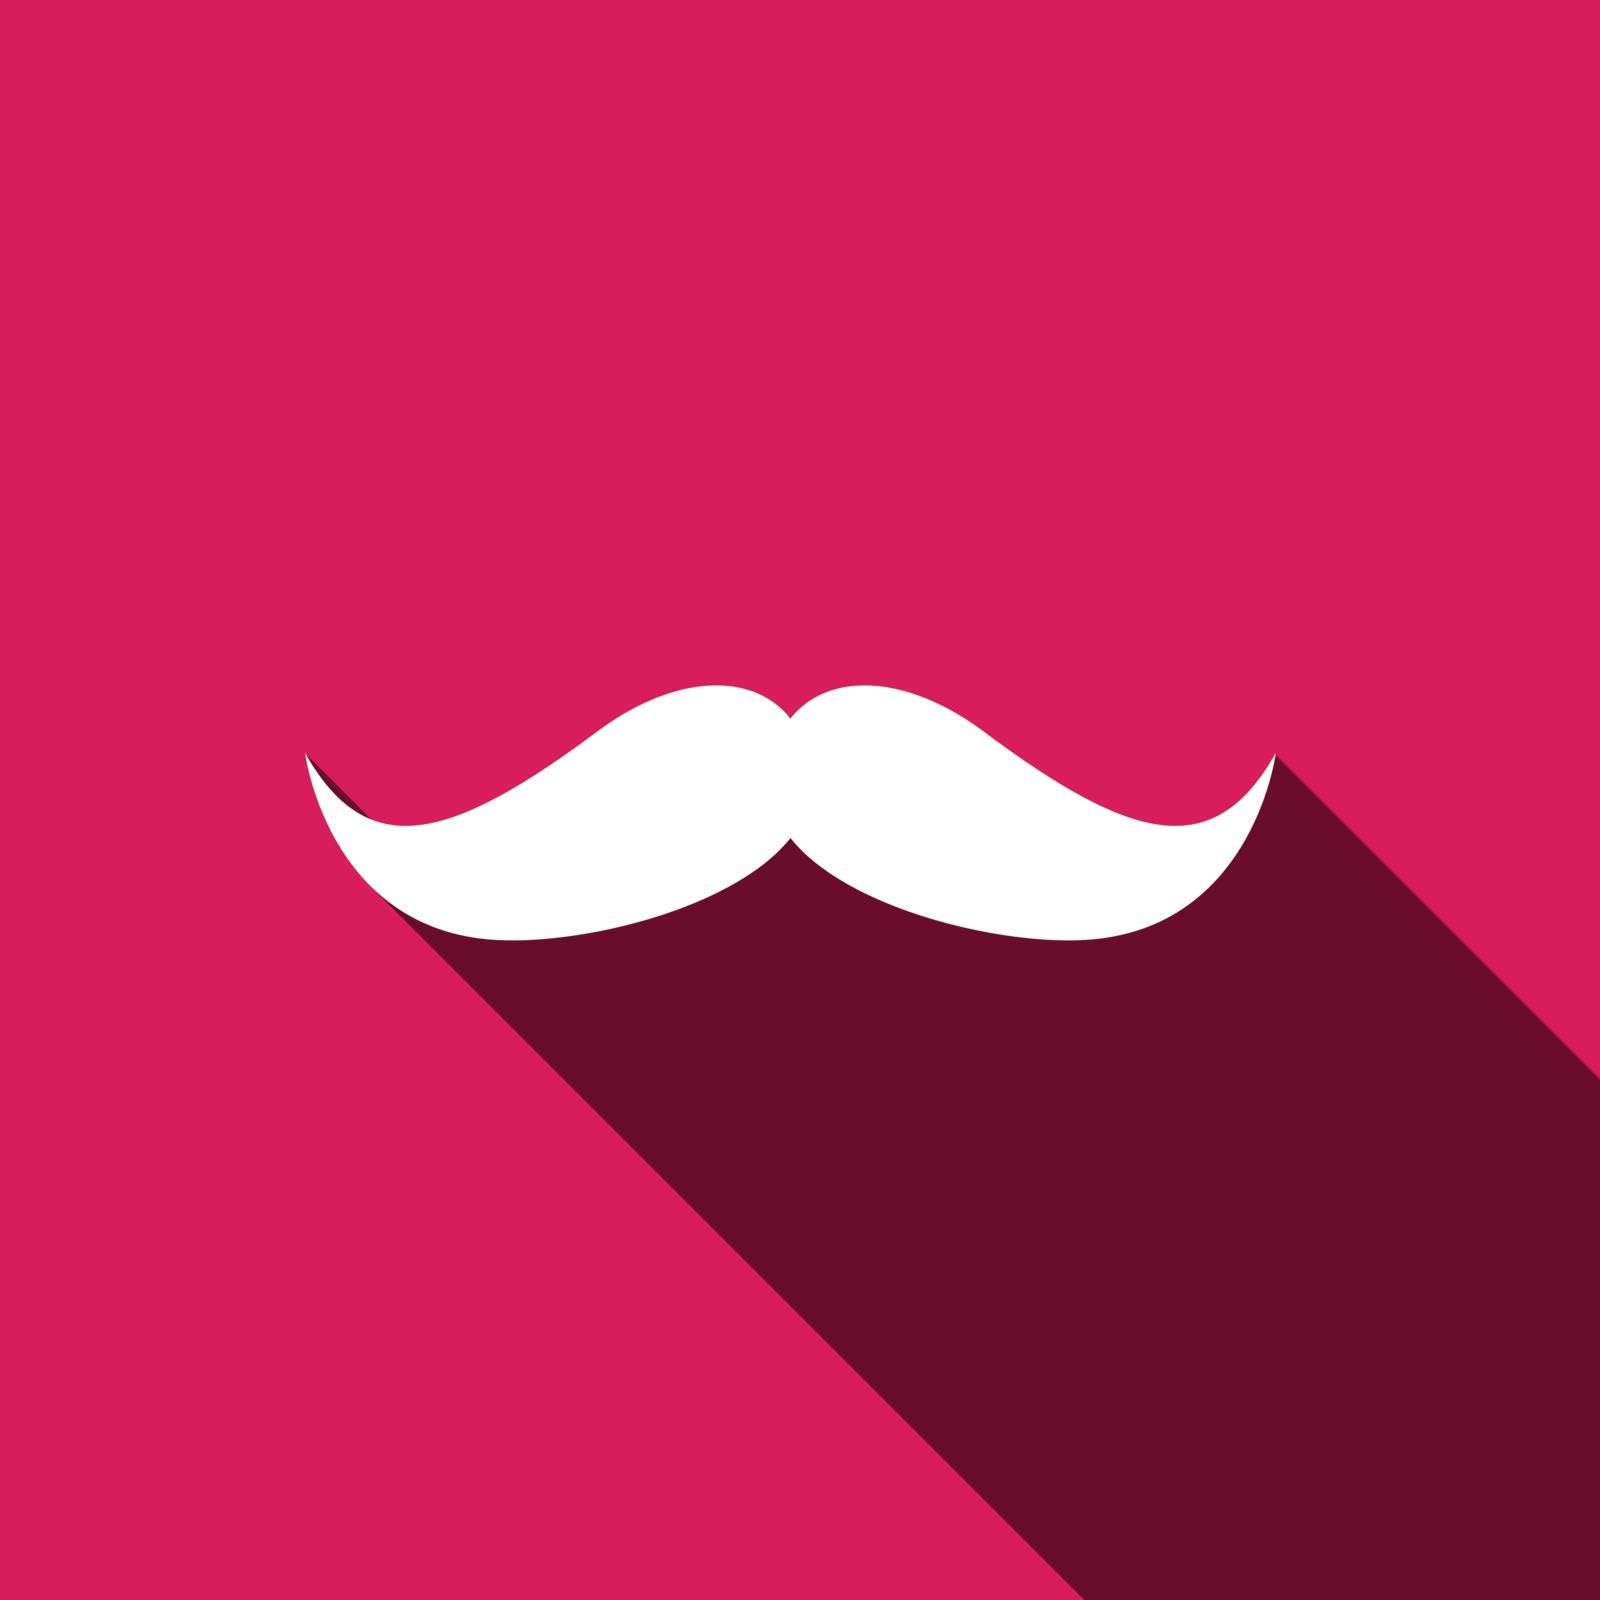 Retro mustache vector icon by nolimit046